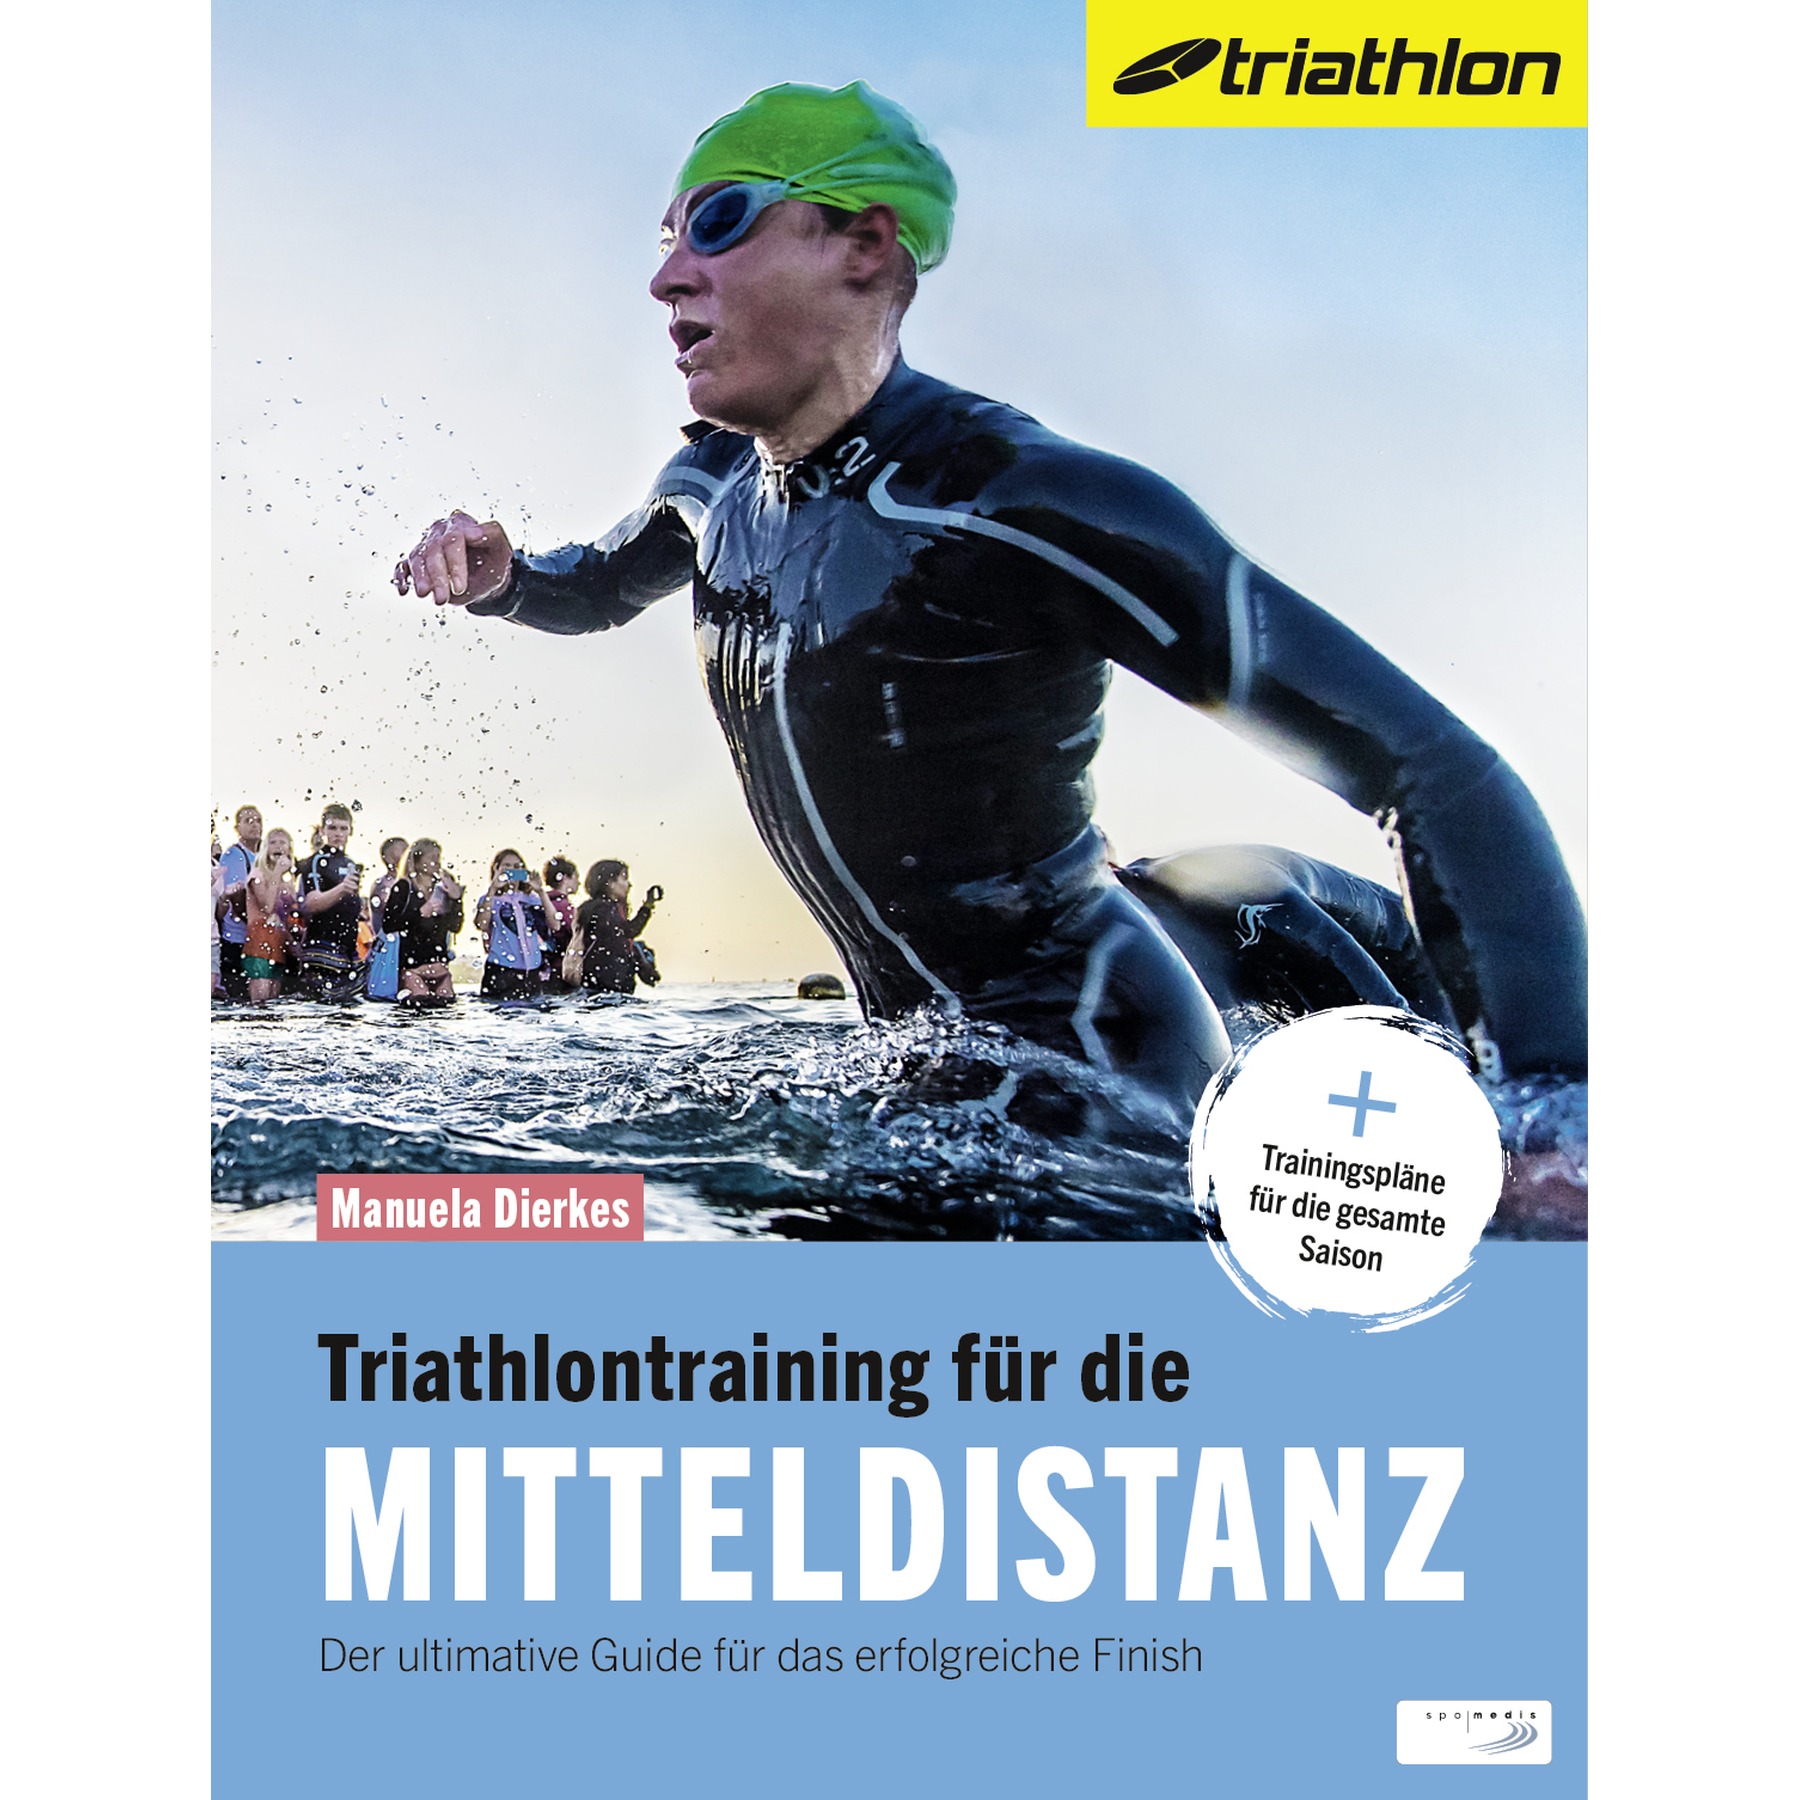 Immagine prodotto da Triathlontraining für die Mitteldistanz